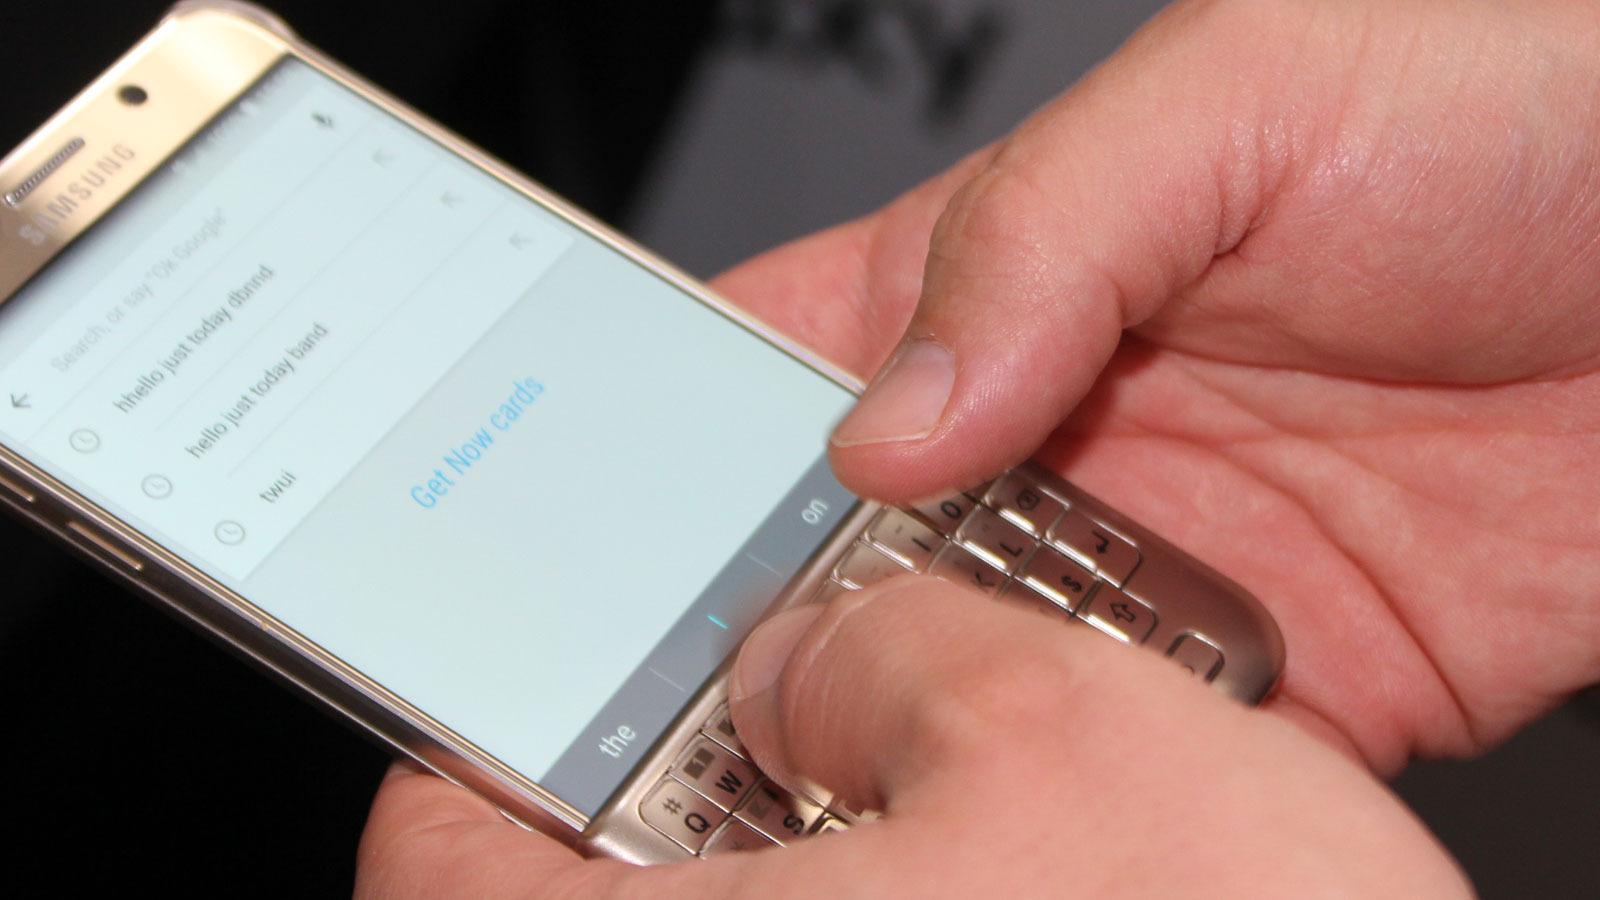 Samsung viste også et nytt qwerty-tastaturdeksel. Dekselet er lett å ta av eller på, og lar deg skrive på skjermen med fysiske taster. Flere bilder av tastaturet og annet tilbehør finner du under artikkelen. Foto: Espen Irwing Swang, Tek.no